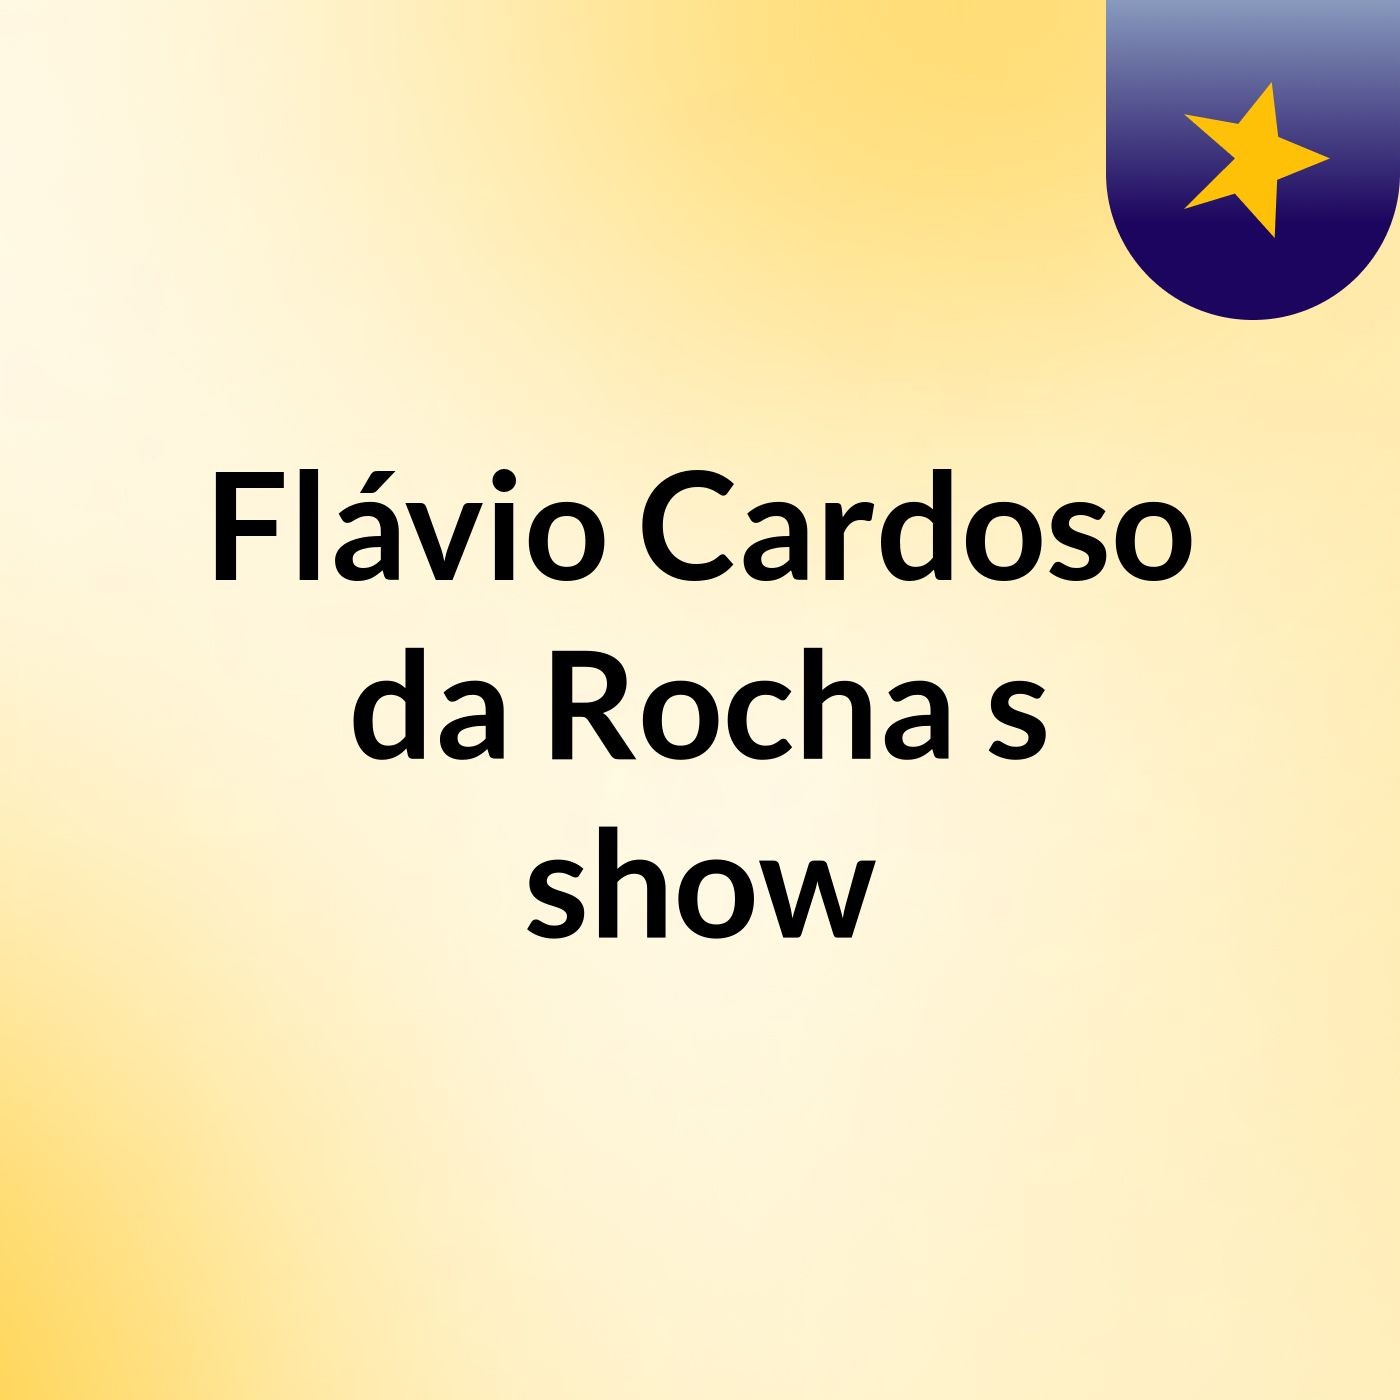 Flávio Cardoso da Rocha's show